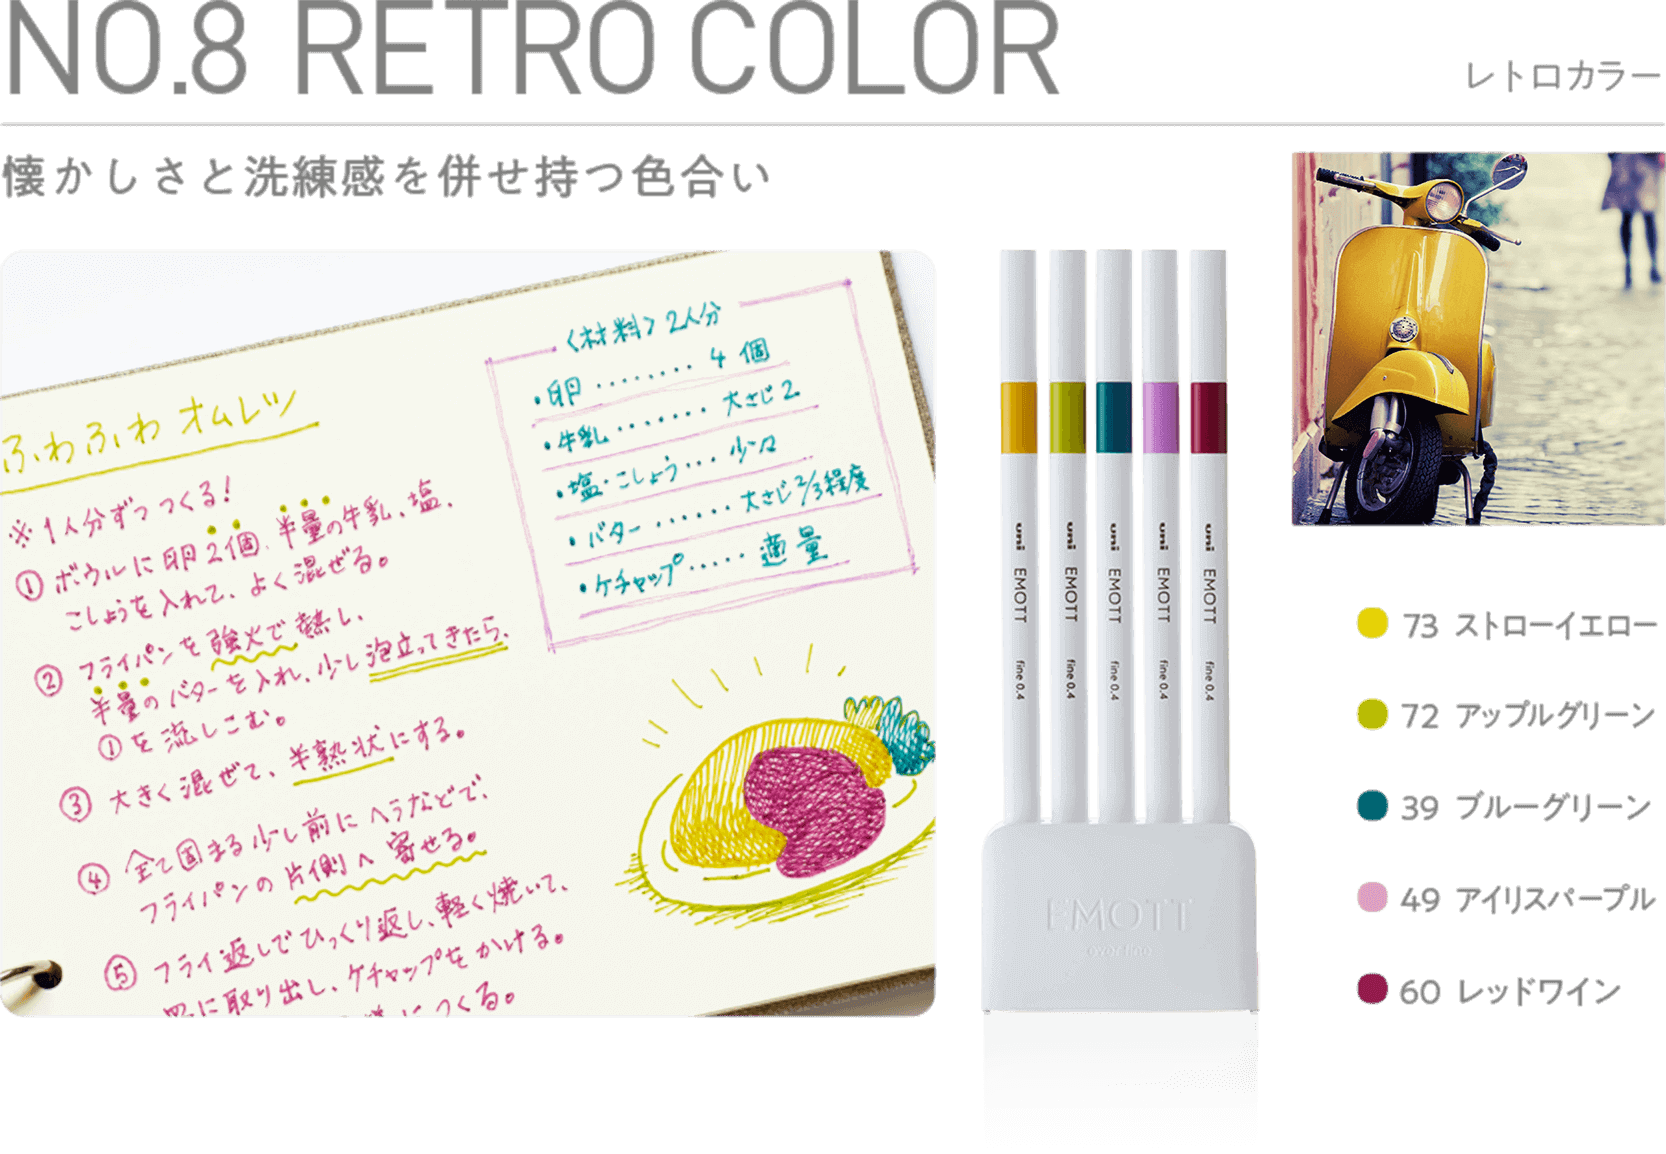 retro color sample